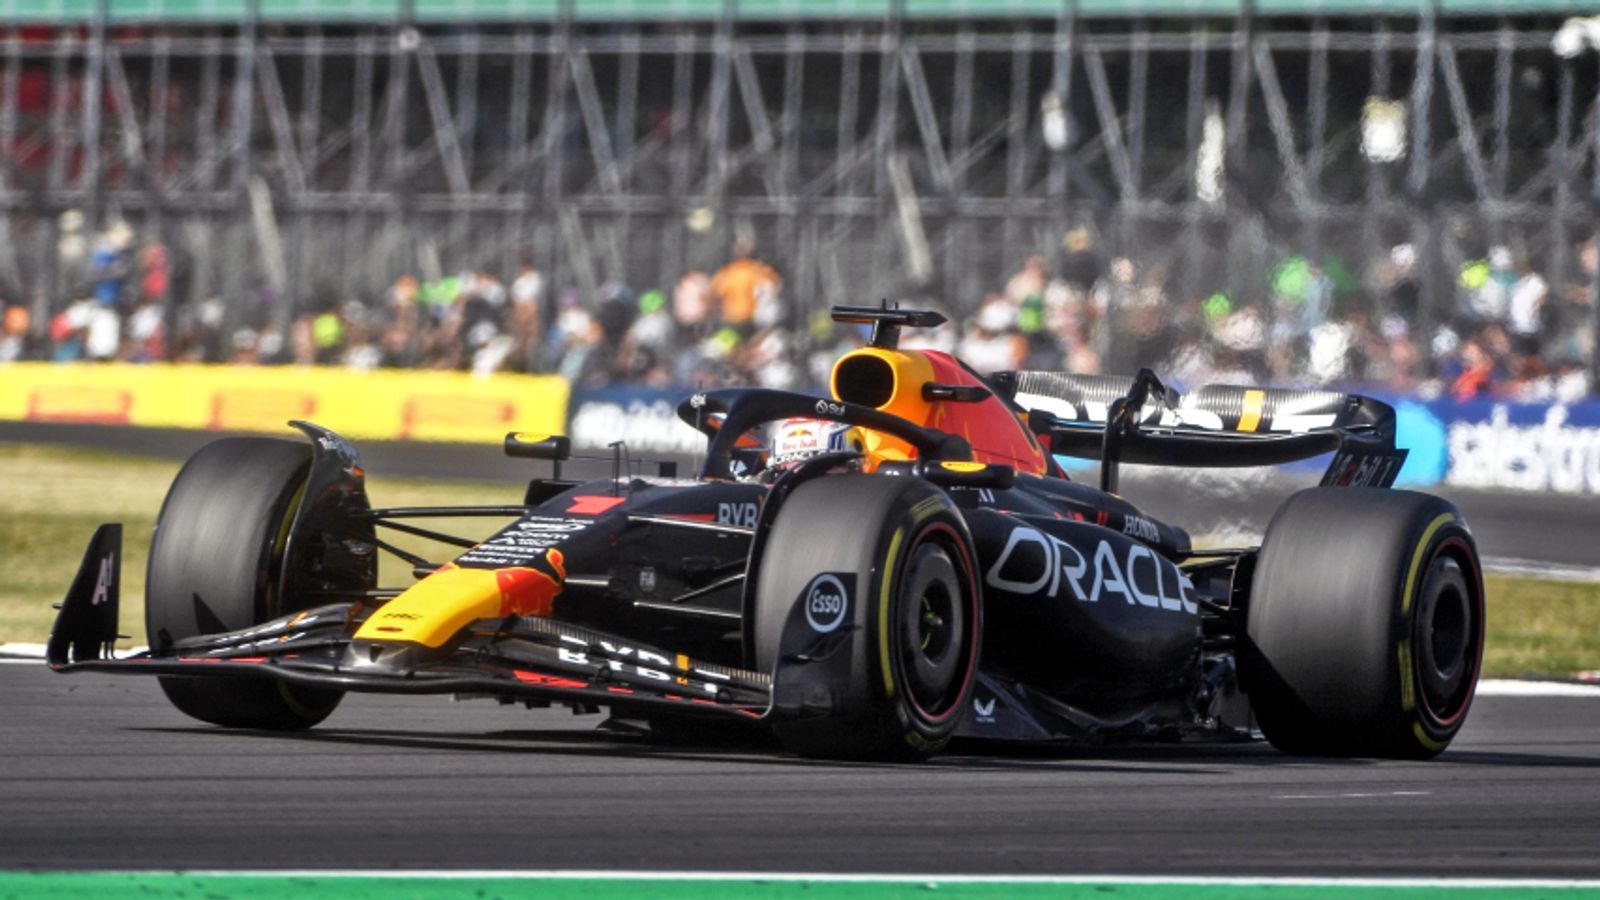 Kualifikasi Grand Prix Inggris: Max Verstappen mengalahkan Lando Norris untuk meraih posisi terdepan saat McLaren menunjukkan kecepatan yang mengejutkan untuk Silverstone |  Berita F1